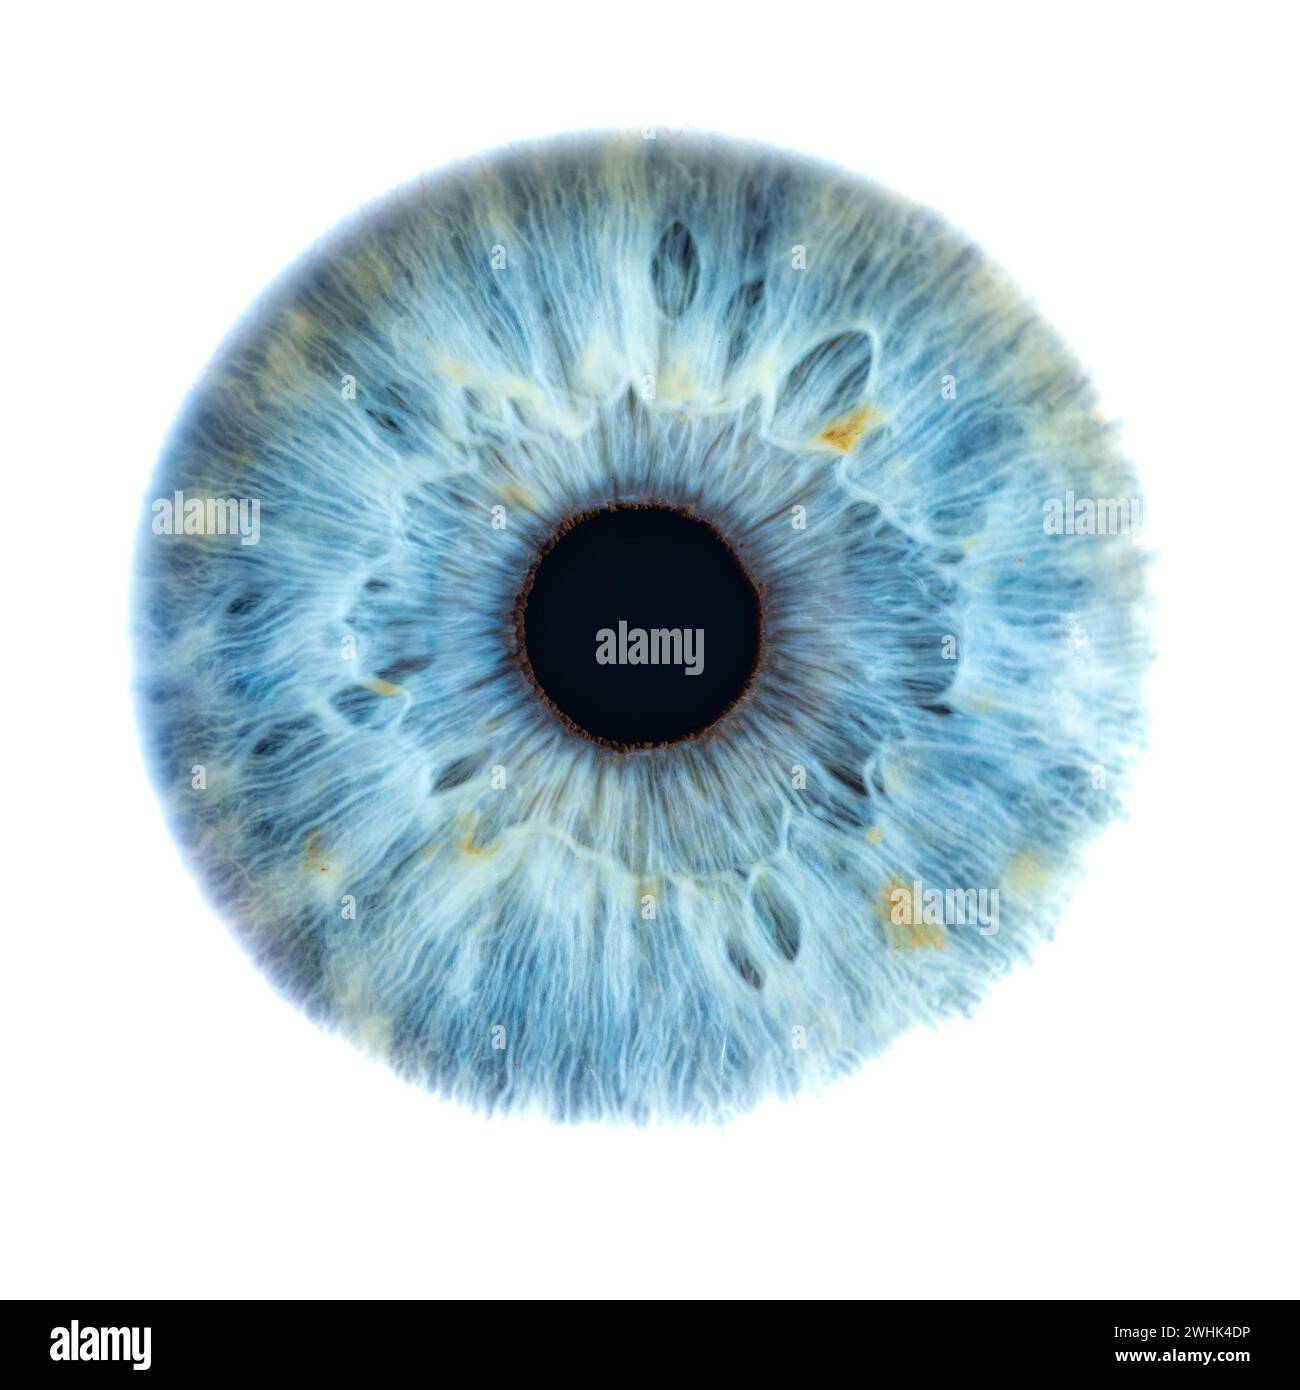 Beschreibung: Männliches Blaues Auge Mit Langen Wimpern In Nahaufnahme. Strukturelle Anatomie. Makrodetails Für Menschliche Blende. Stockfoto